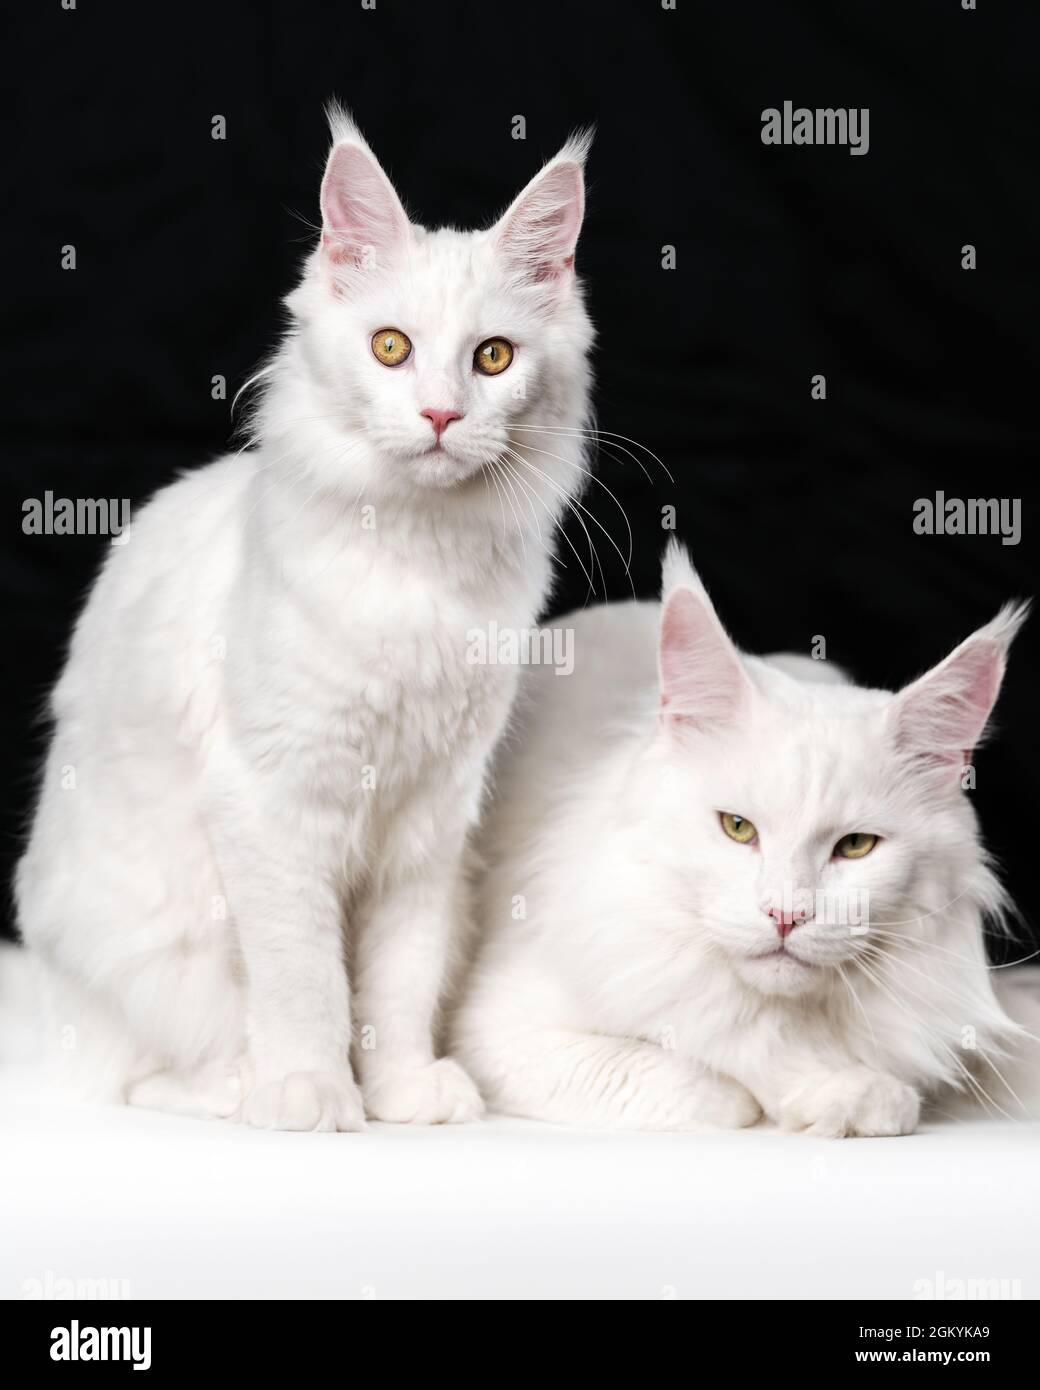 Porträt von zwei weißen amerikanischen Langhaar-Katzen auf schwarzem und  weißem Hintergrund. Eine Hauskatze sitzt, eine andere Katze liegt  Stockfotografie - Alamy